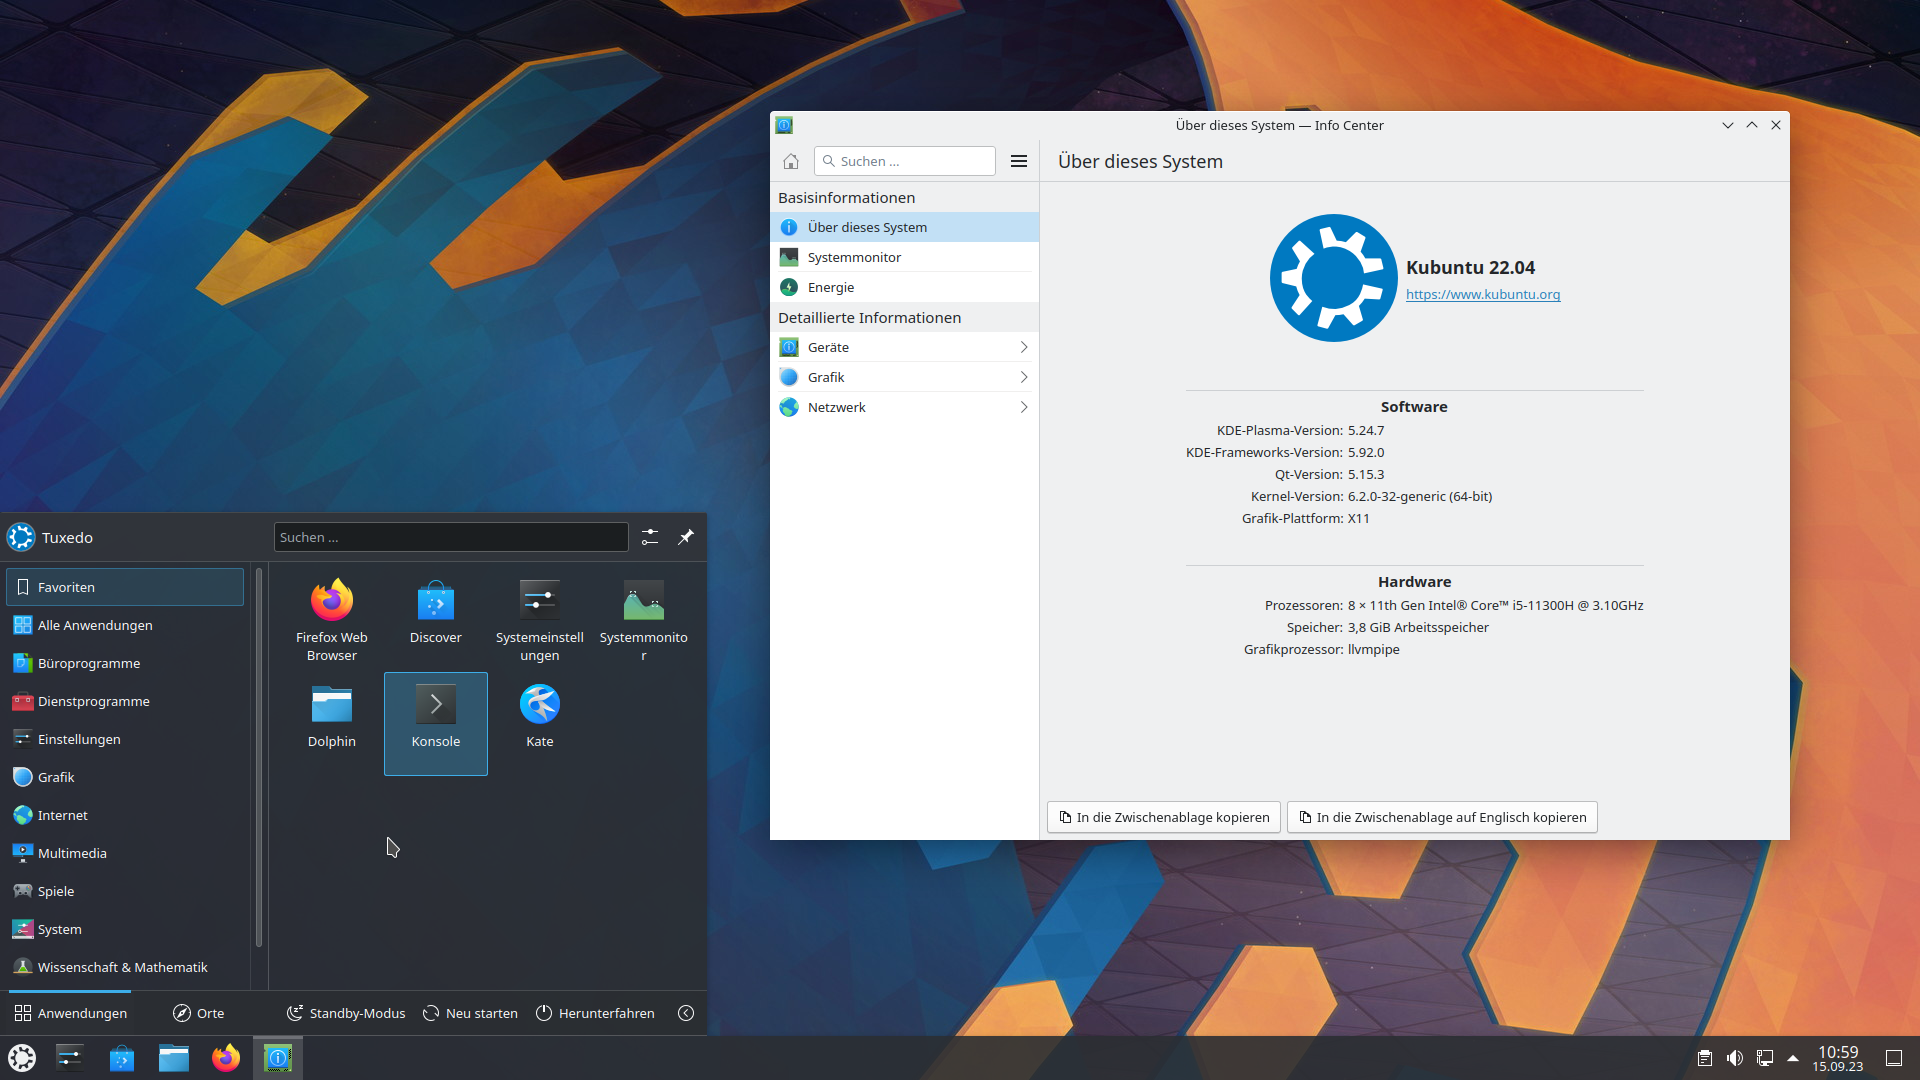 Kubuntu 22.04 with KDE Plasma 5.24 and Ubuntu kernel 6.2.